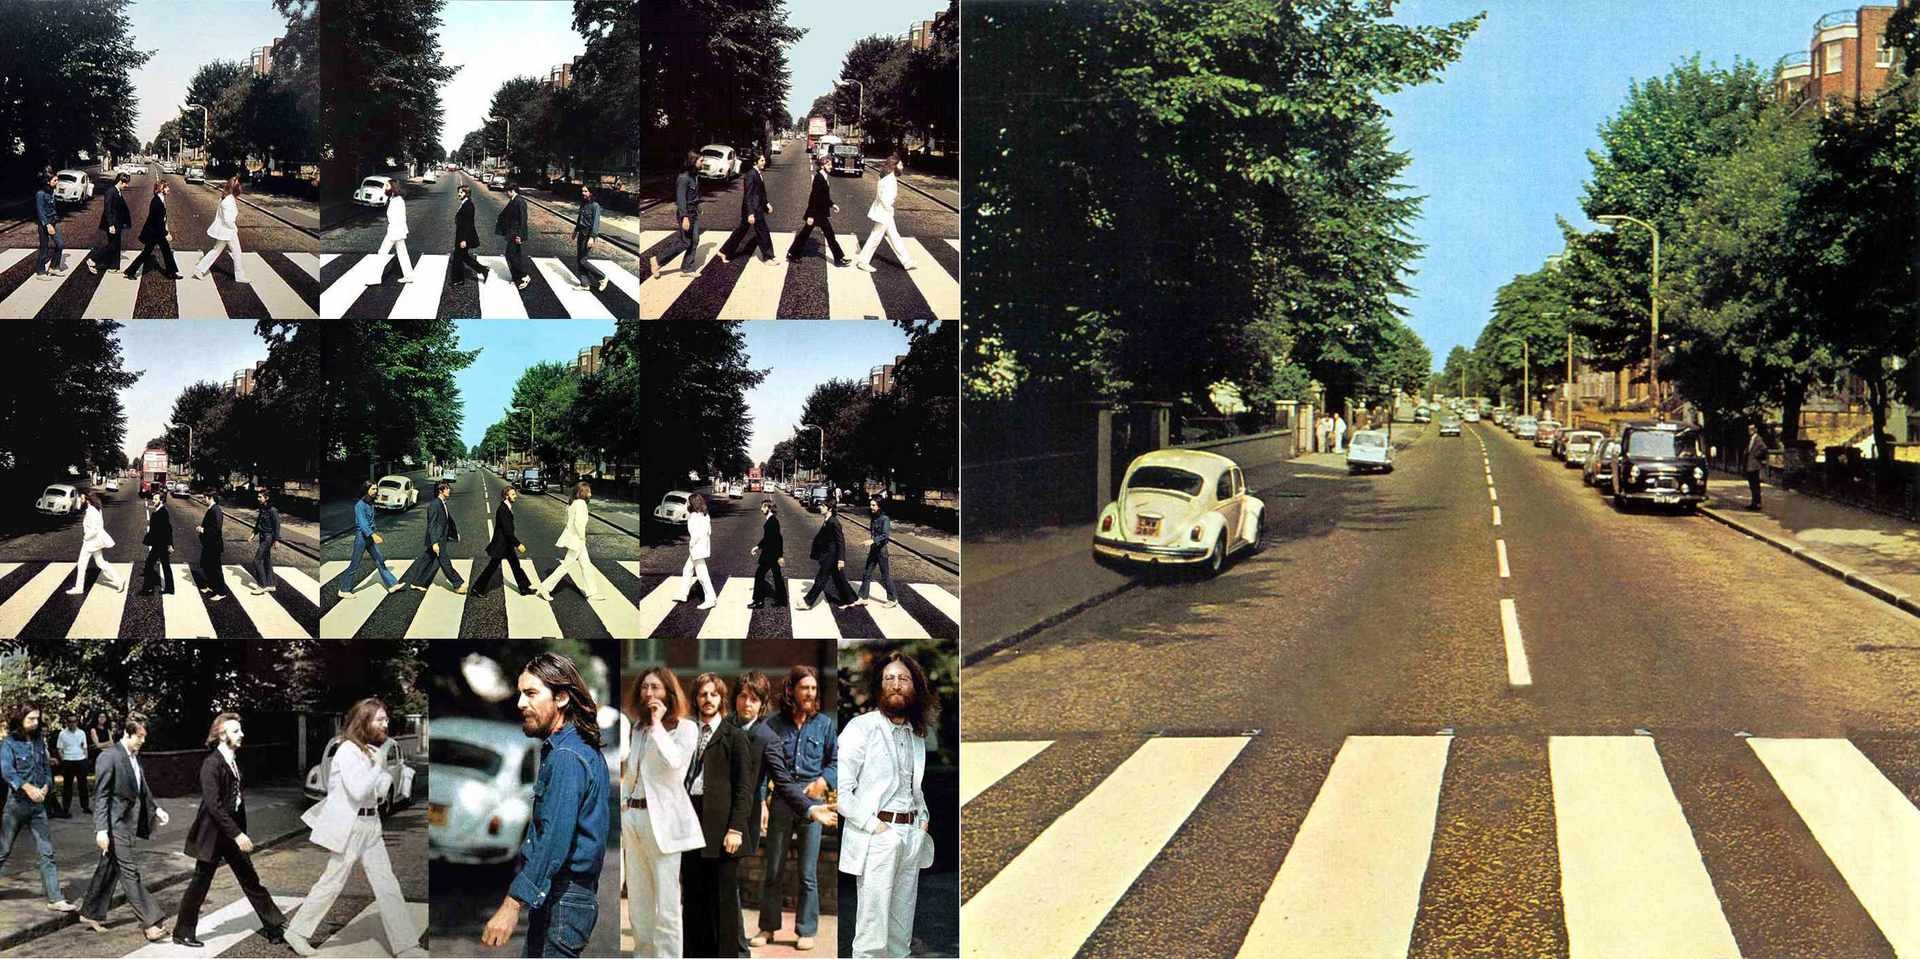 阿比路(Abbey Road)